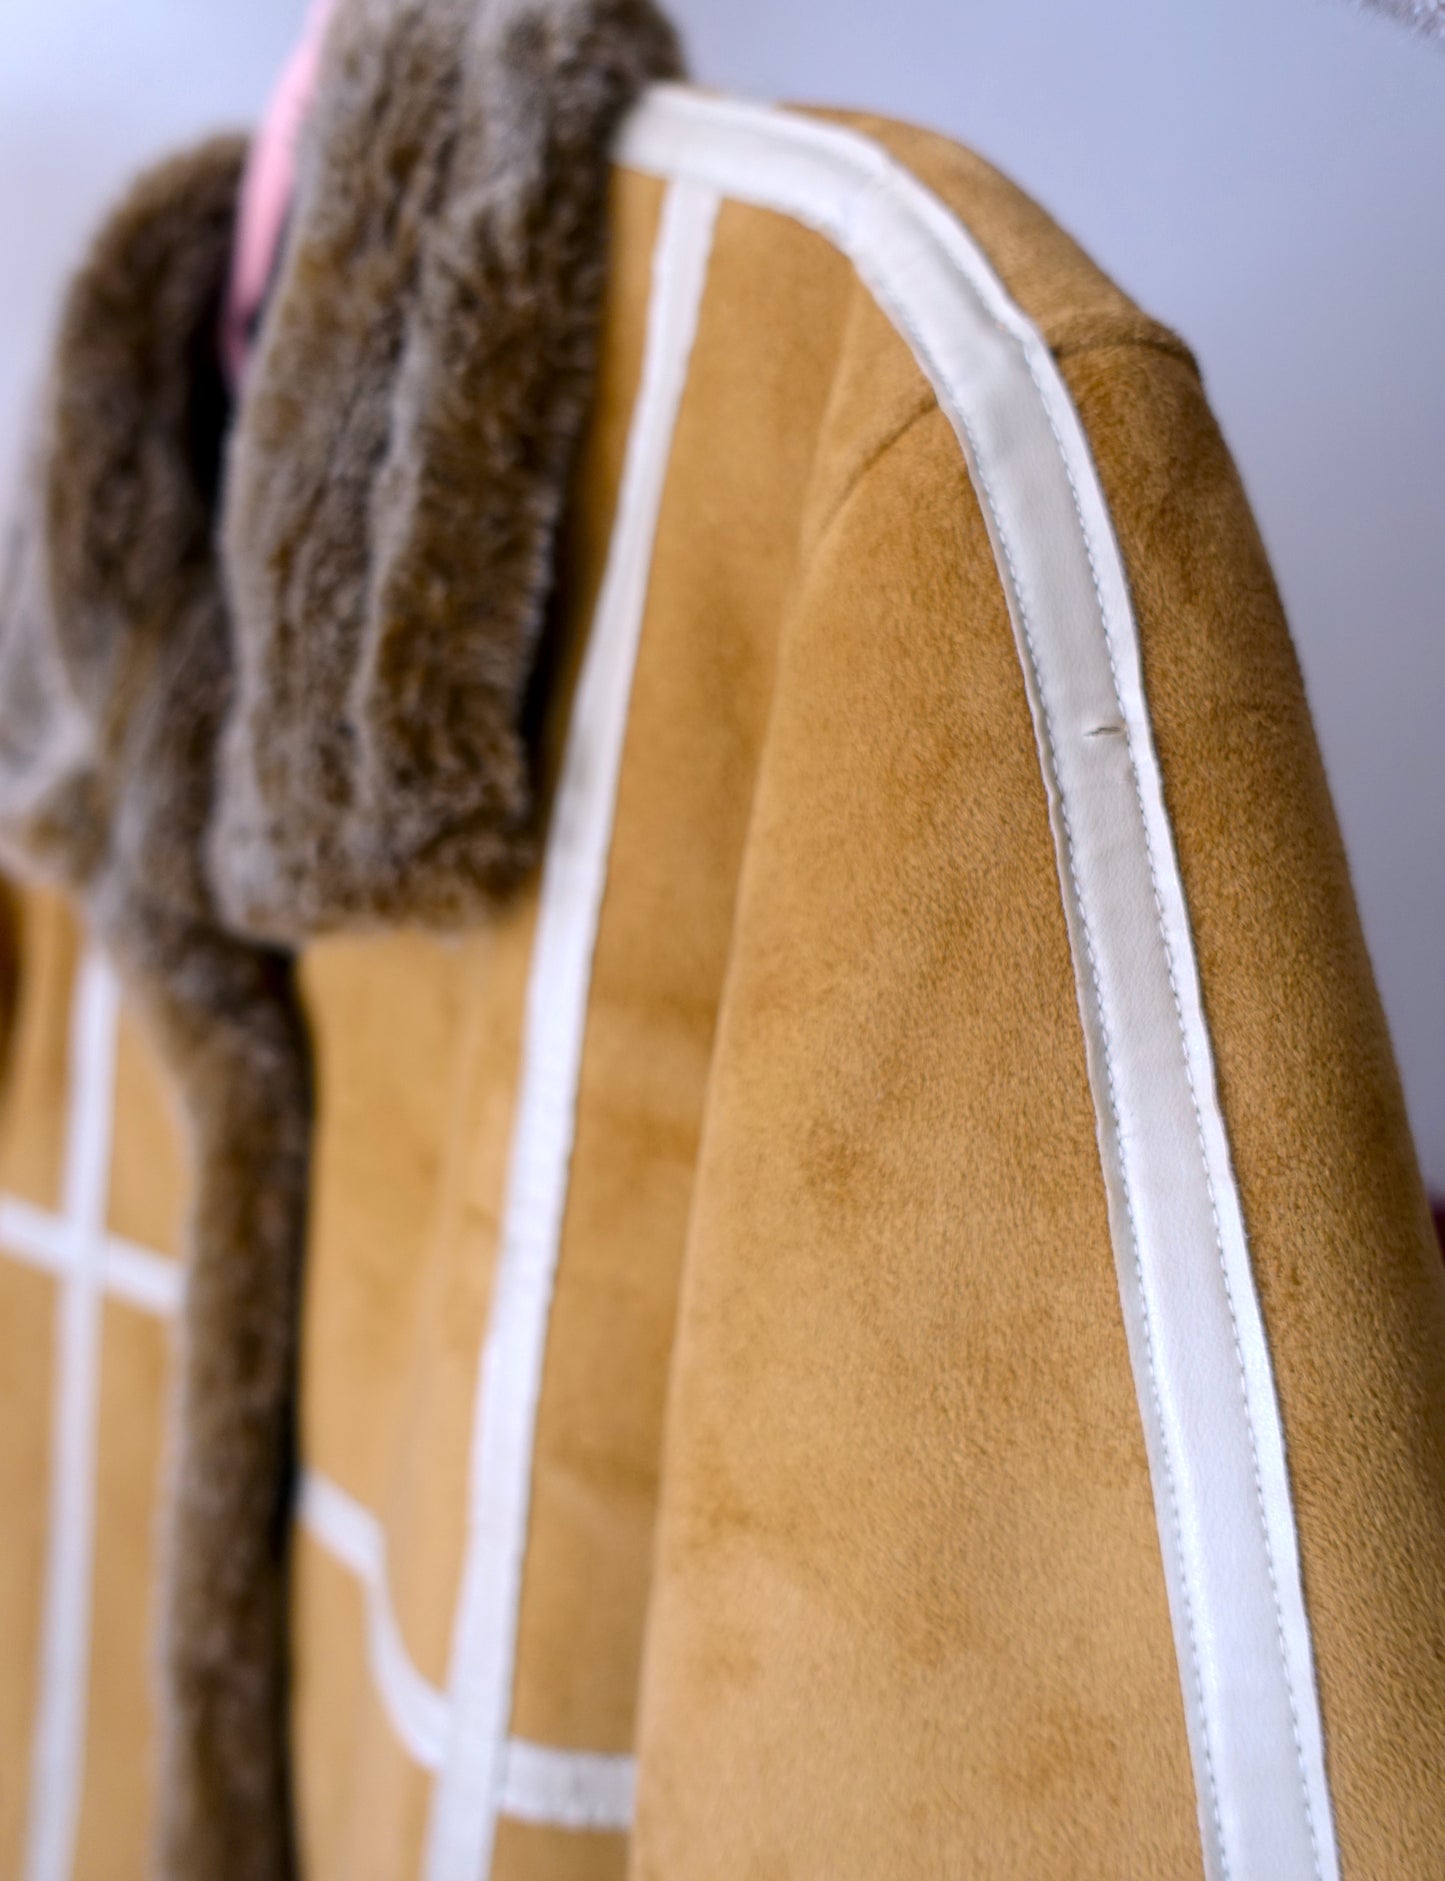 Vintage bohemian faux fur camel coat